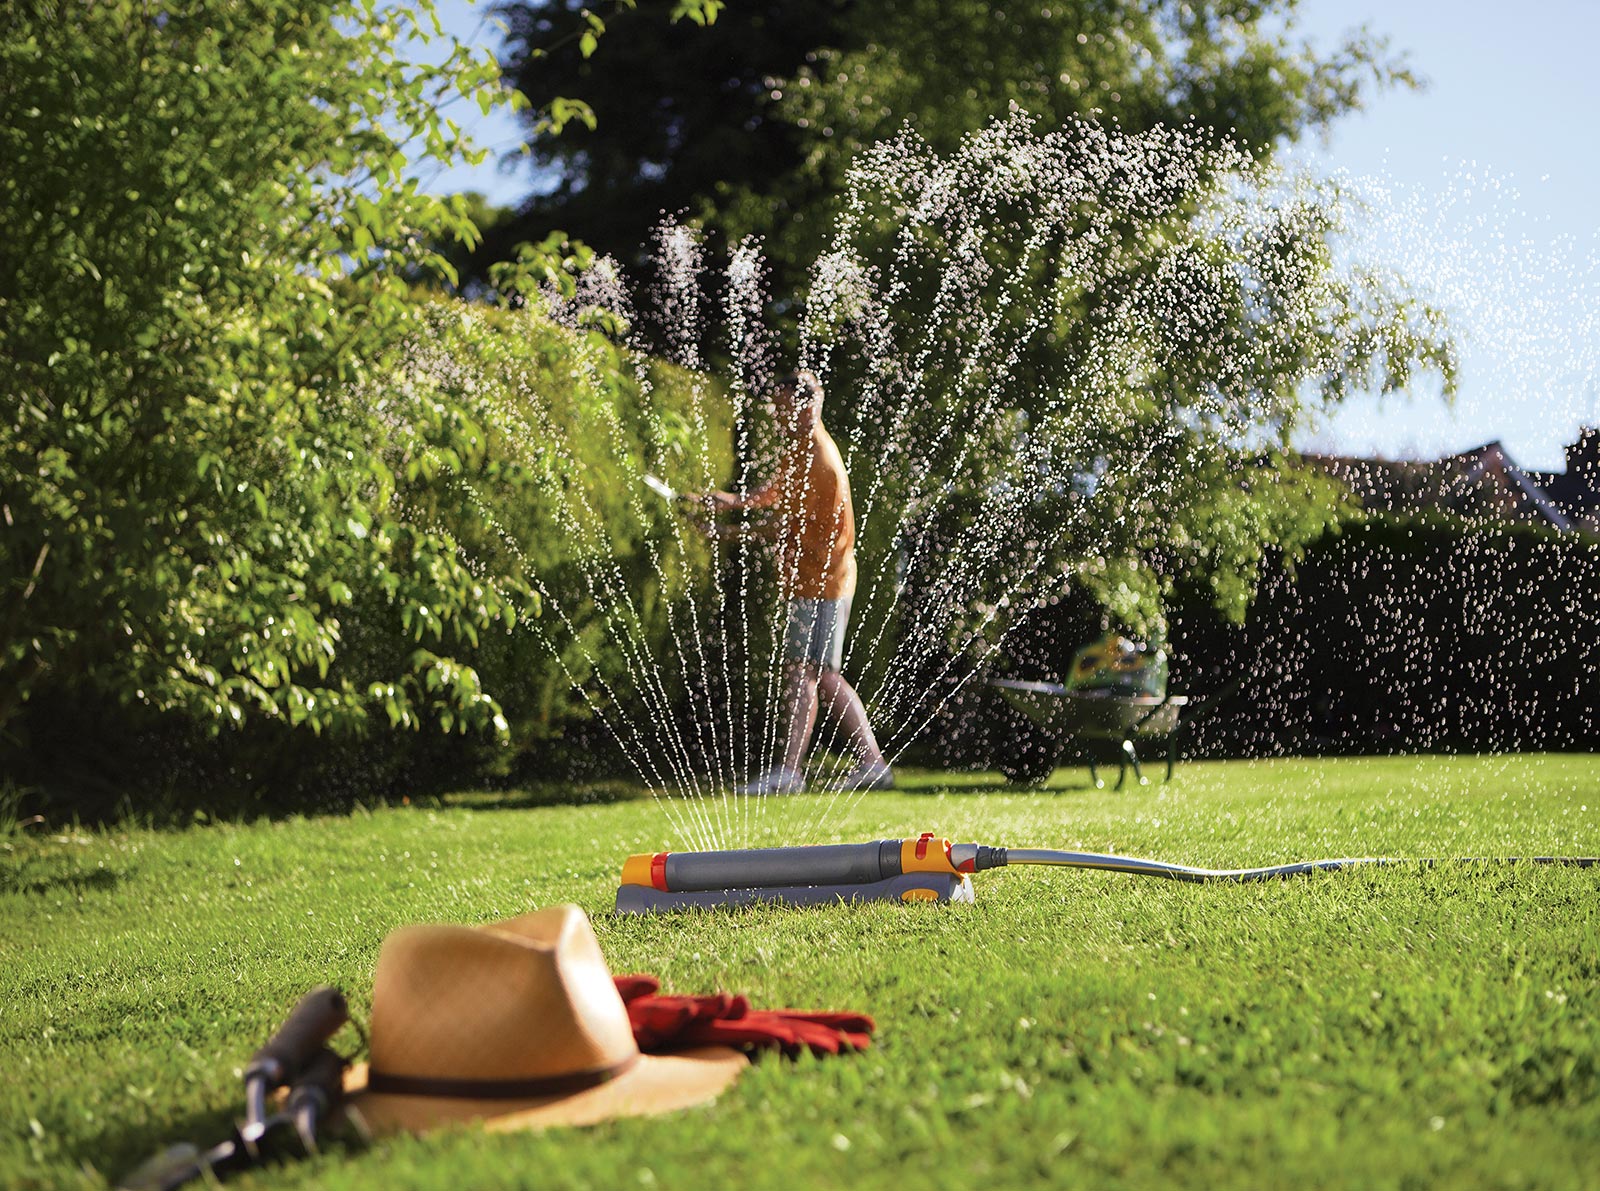 Main Benefits Of Filtering Your Garden Water